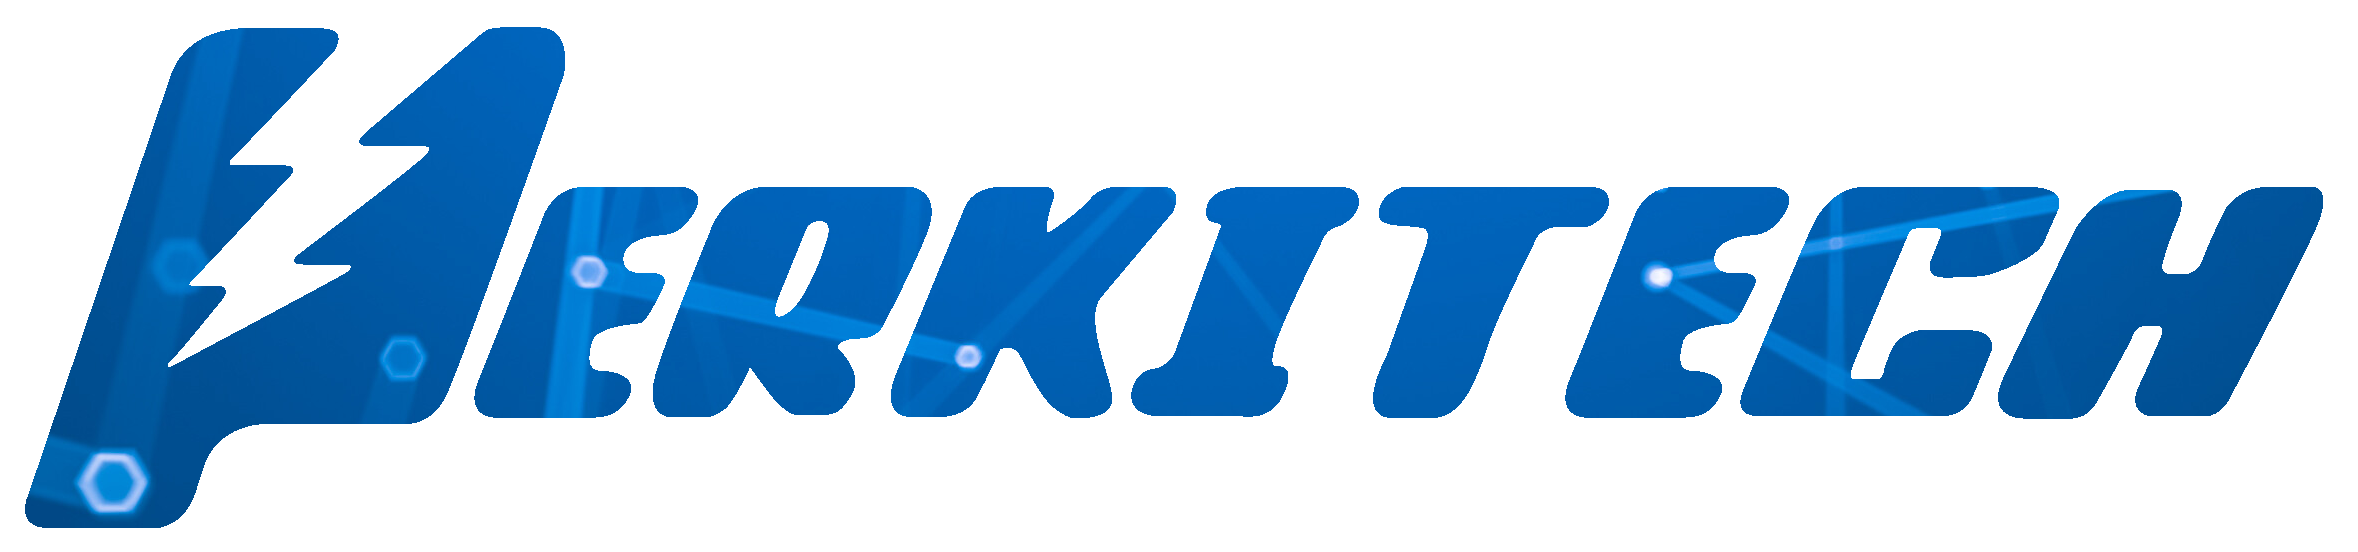 Perkitech logo